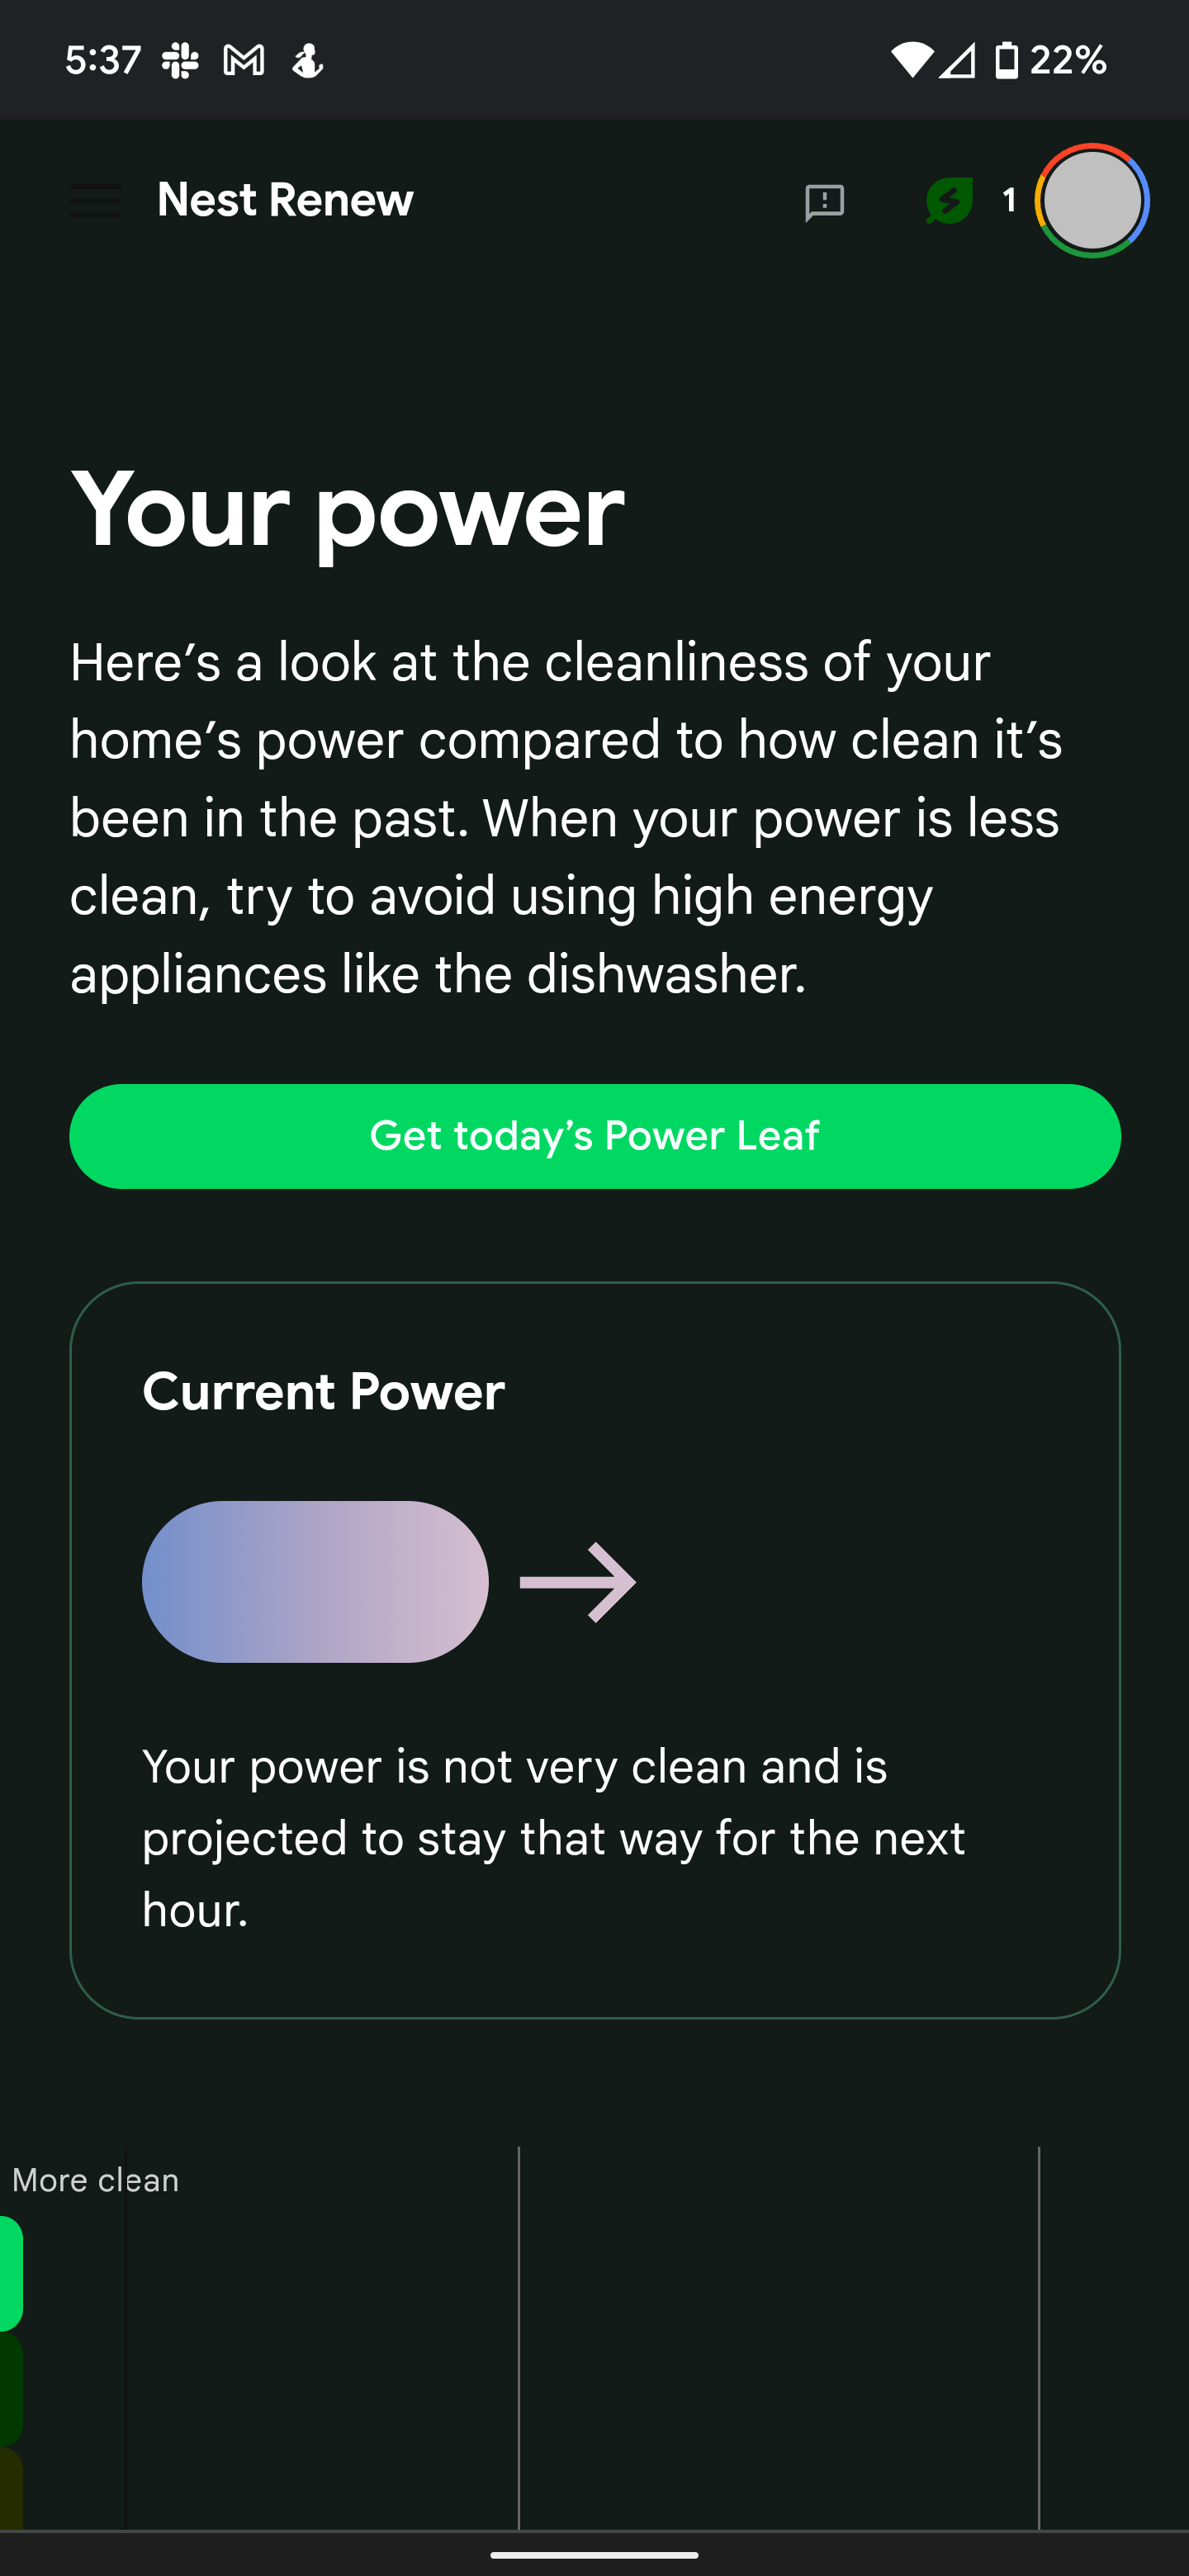 Uma captura de tela do site Nest Renew mostrando o consumo de energia